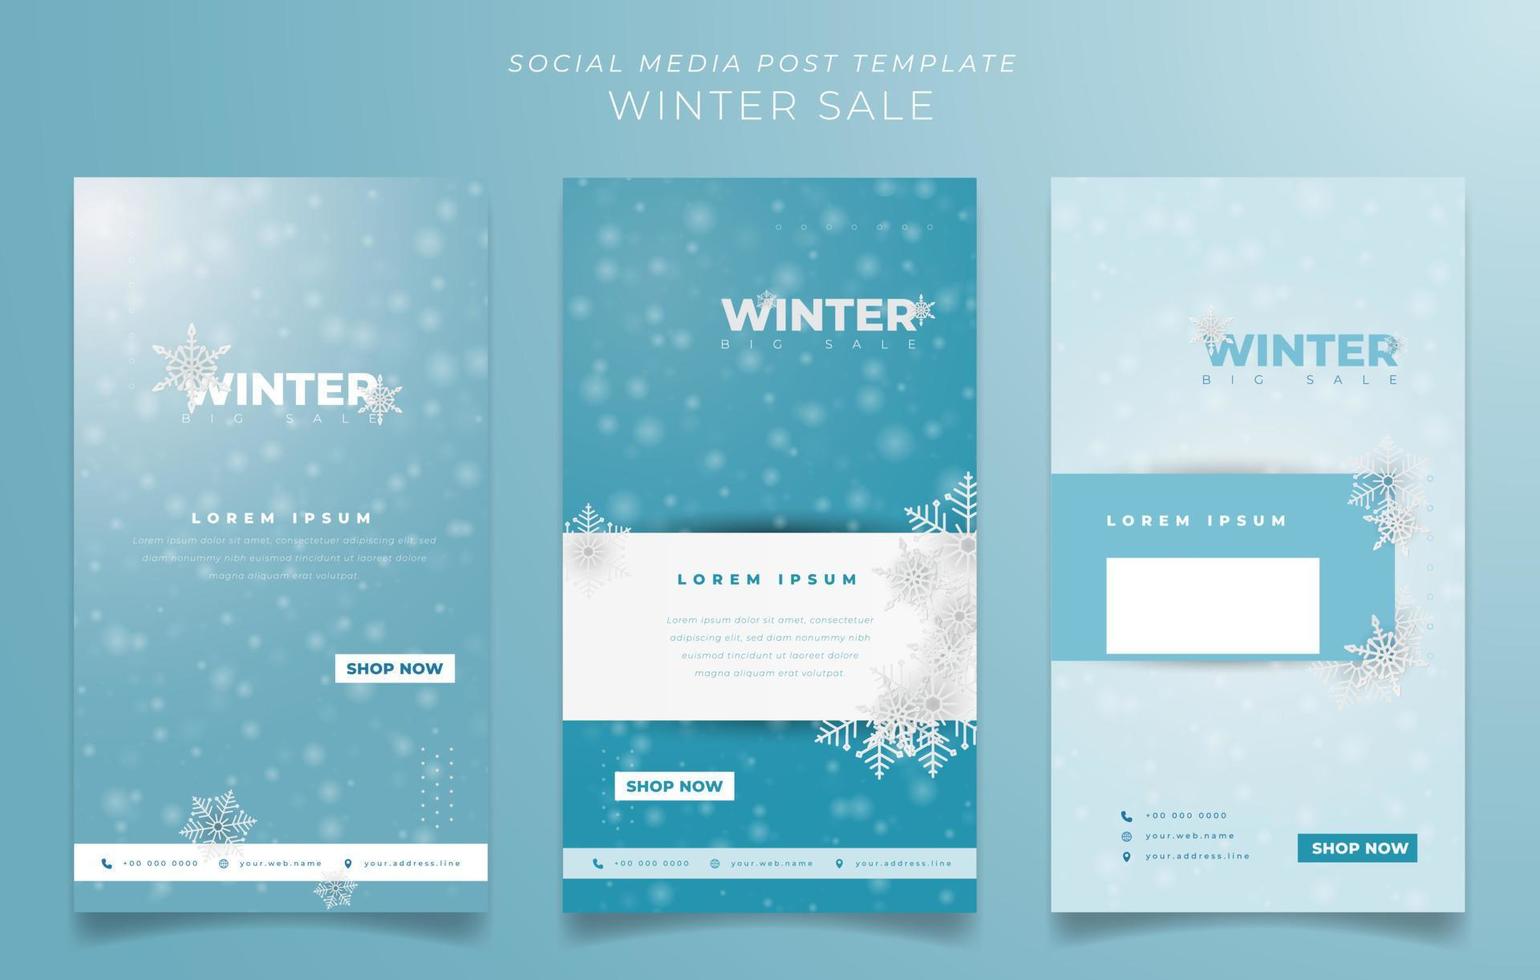 conjunto de plantillas de publicaciones en redes sociales para el diseño de rebajas de invierno con diseño de fondo blanco y azul vector